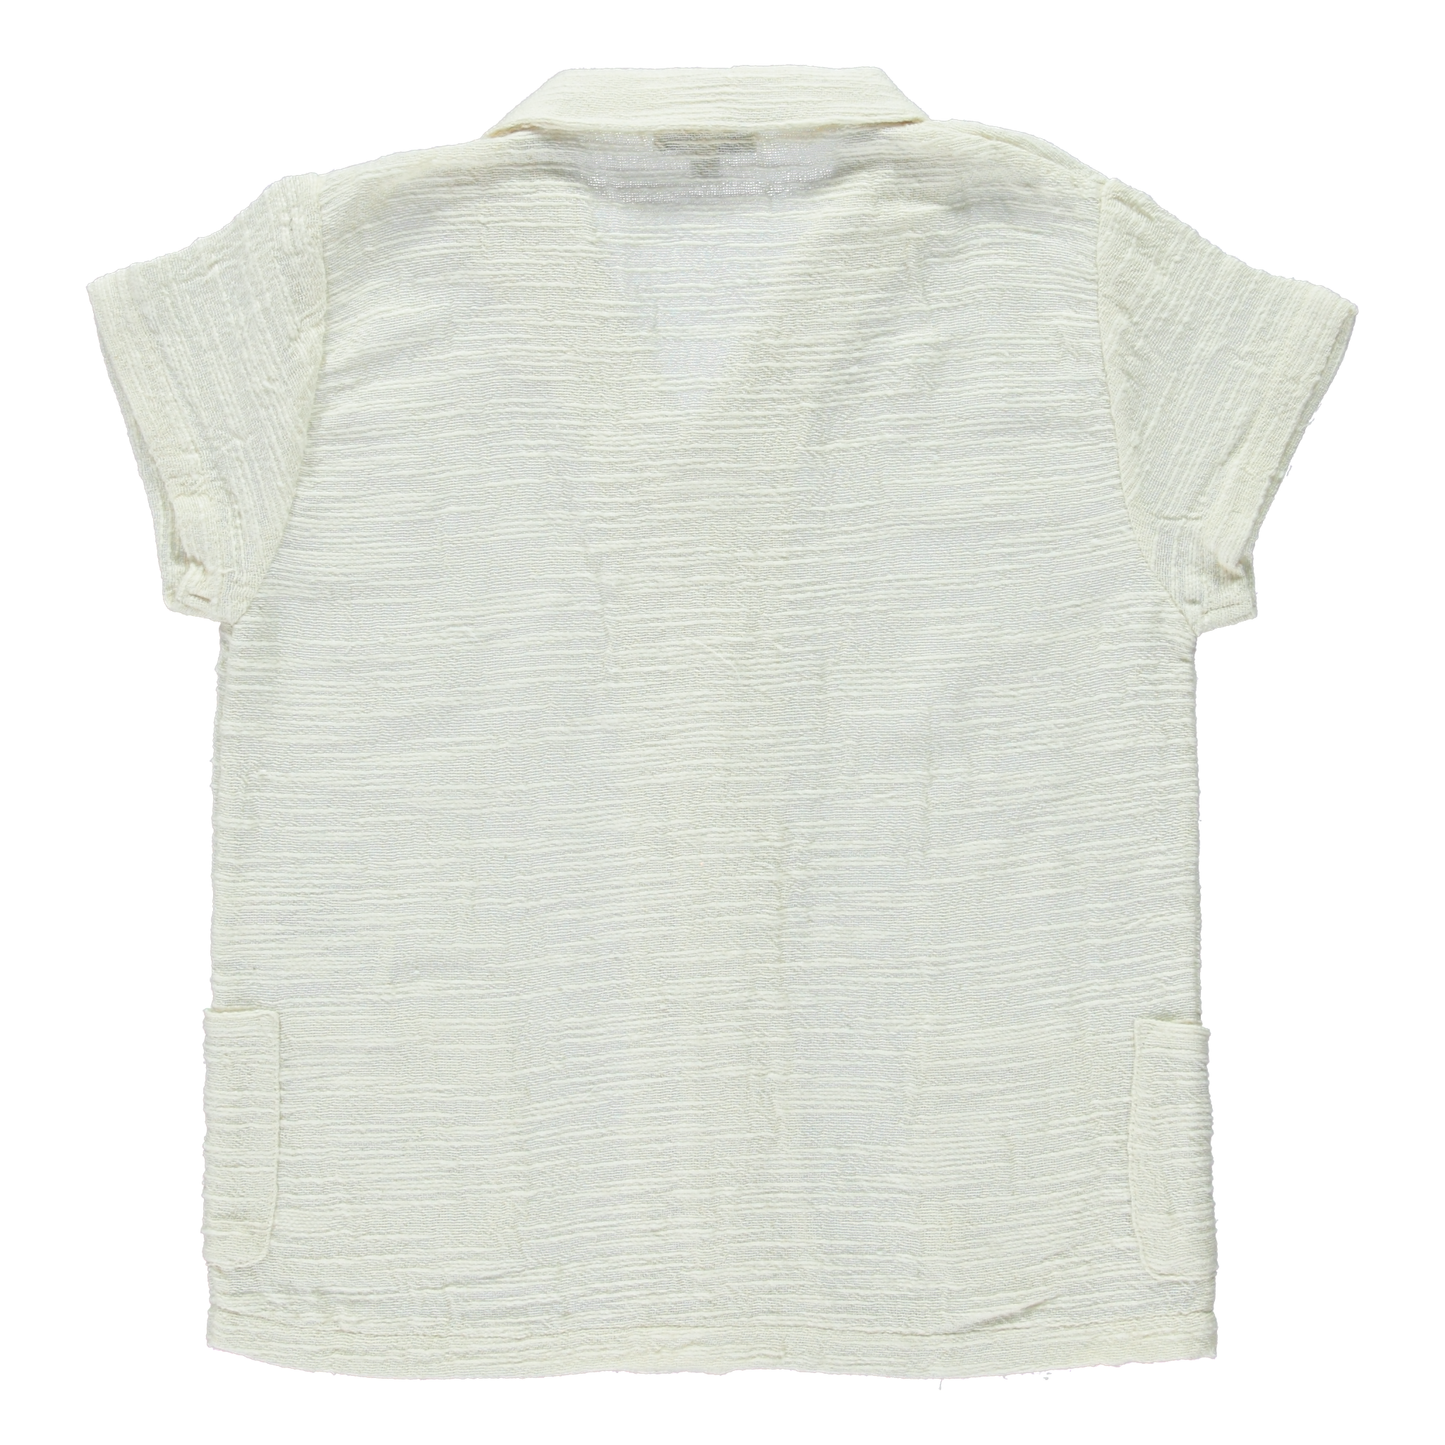 Noa Organic Cotton Shirt White